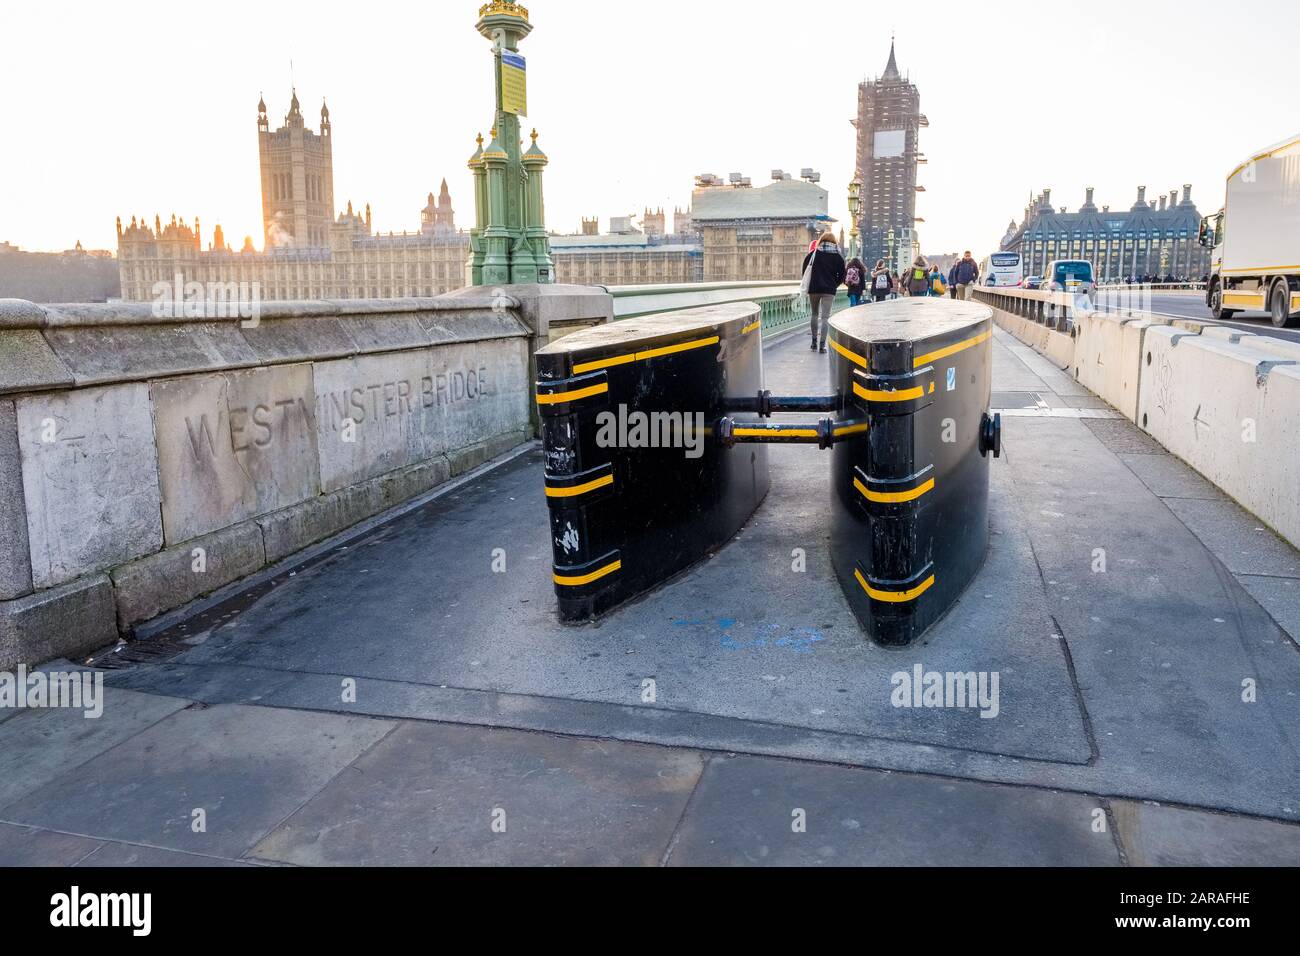 Terrorismusbekämpfung: Hindernisse auf dem Straßenbelag am Ende der Westminster Bridge, London, Großbritannien Stockfoto